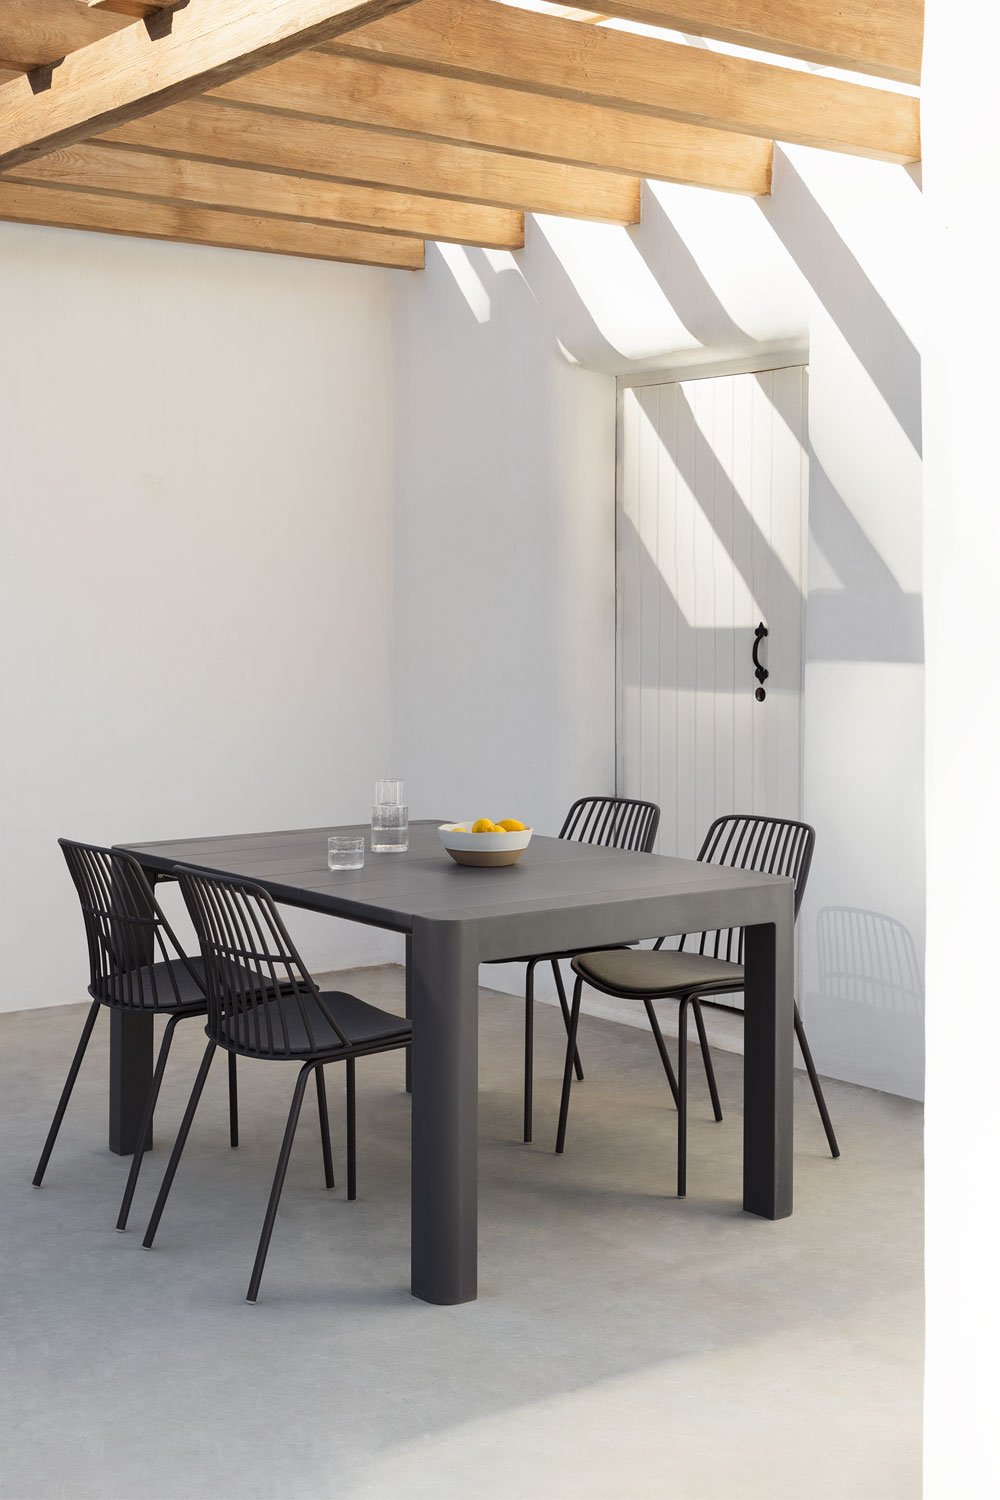 Arnadine rechthoekige tafelset (140x100 cm) en 4 Maeba tuinstoelen, galerij beeld 1